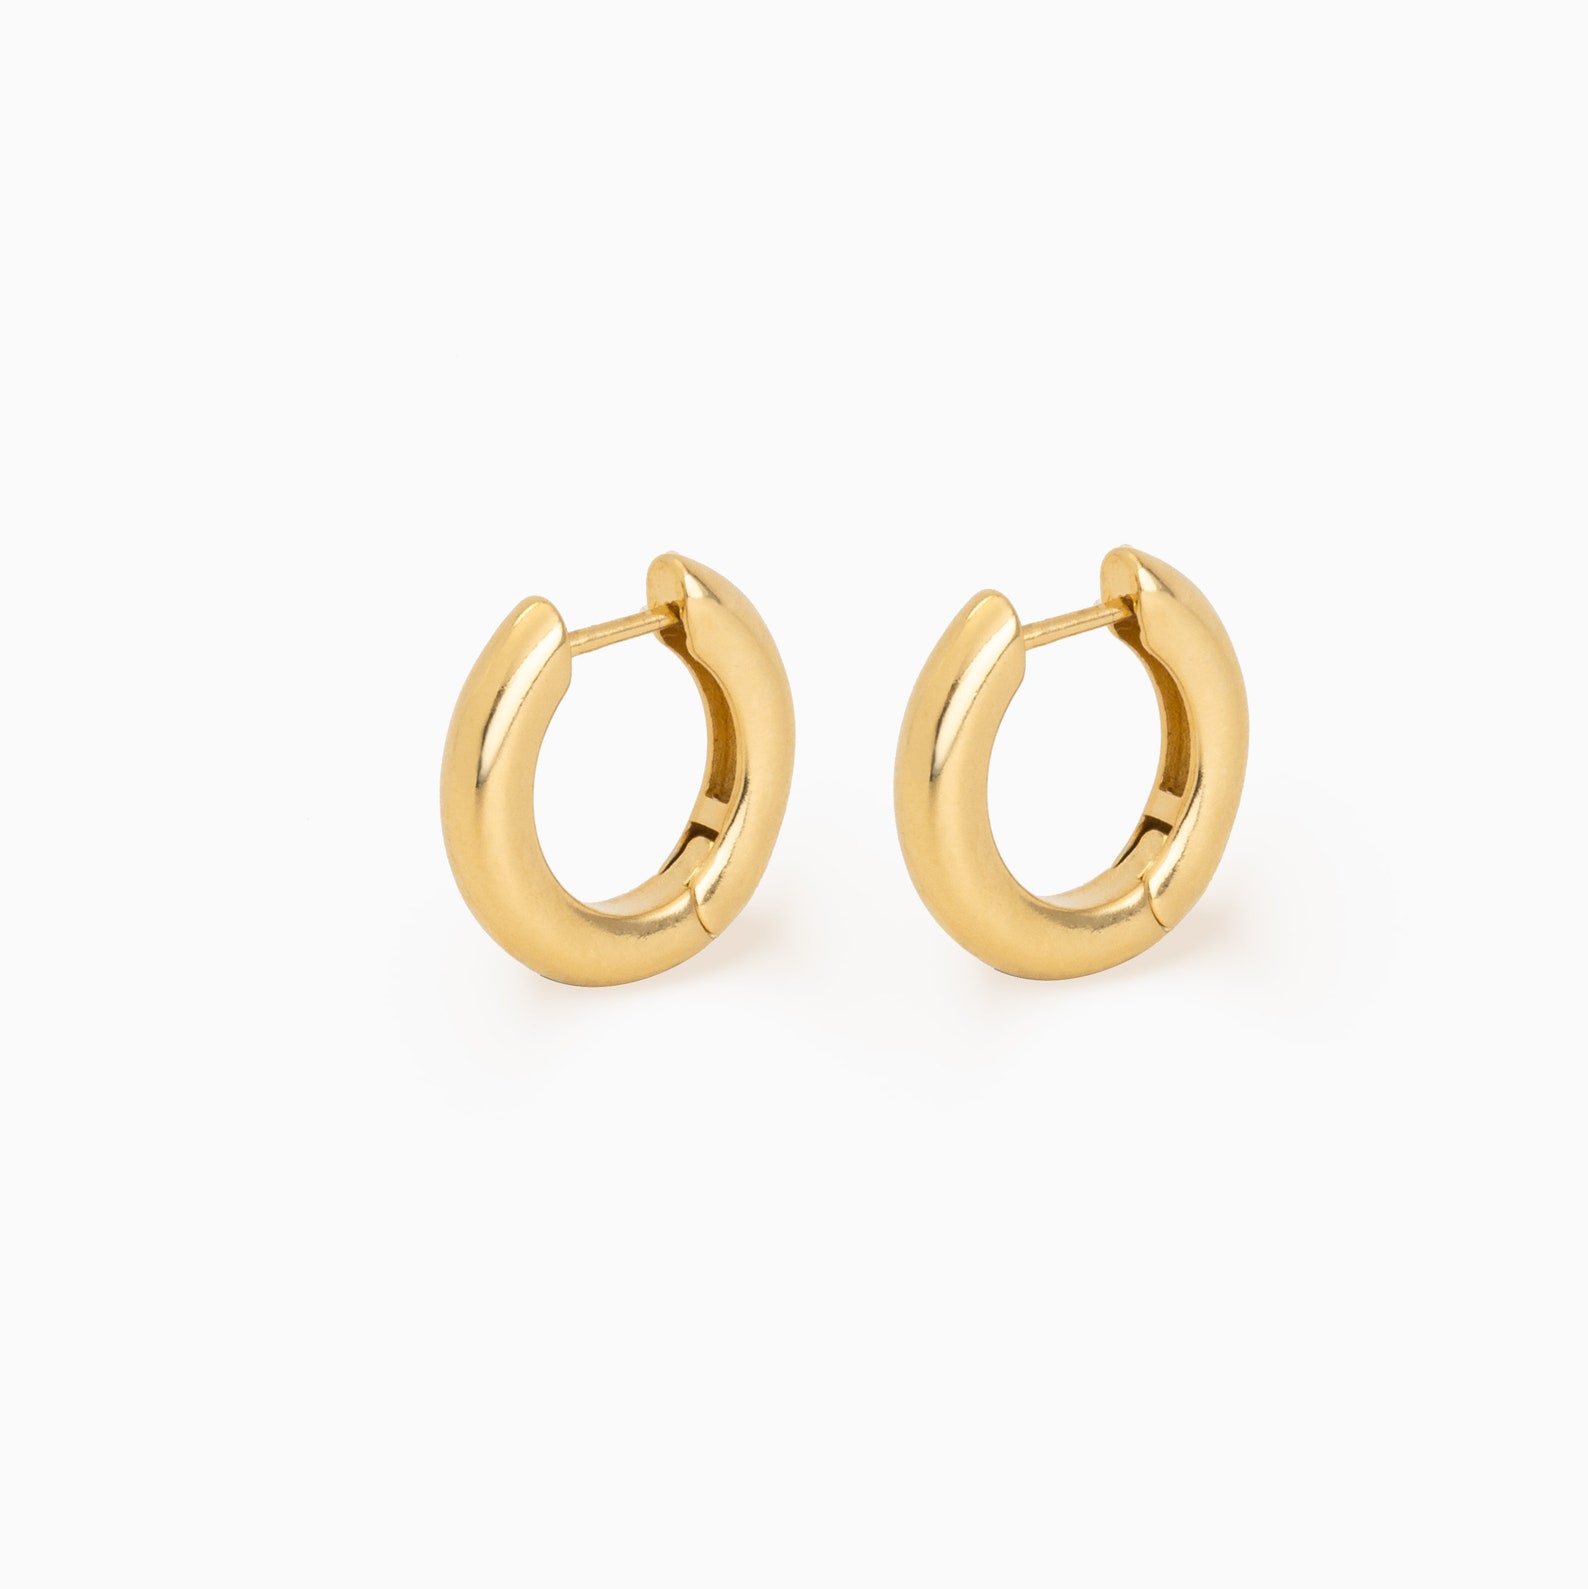 CLAIRE Mini Hoops Gold Earrings Hoop Earrings Hoops 18k - Etsy